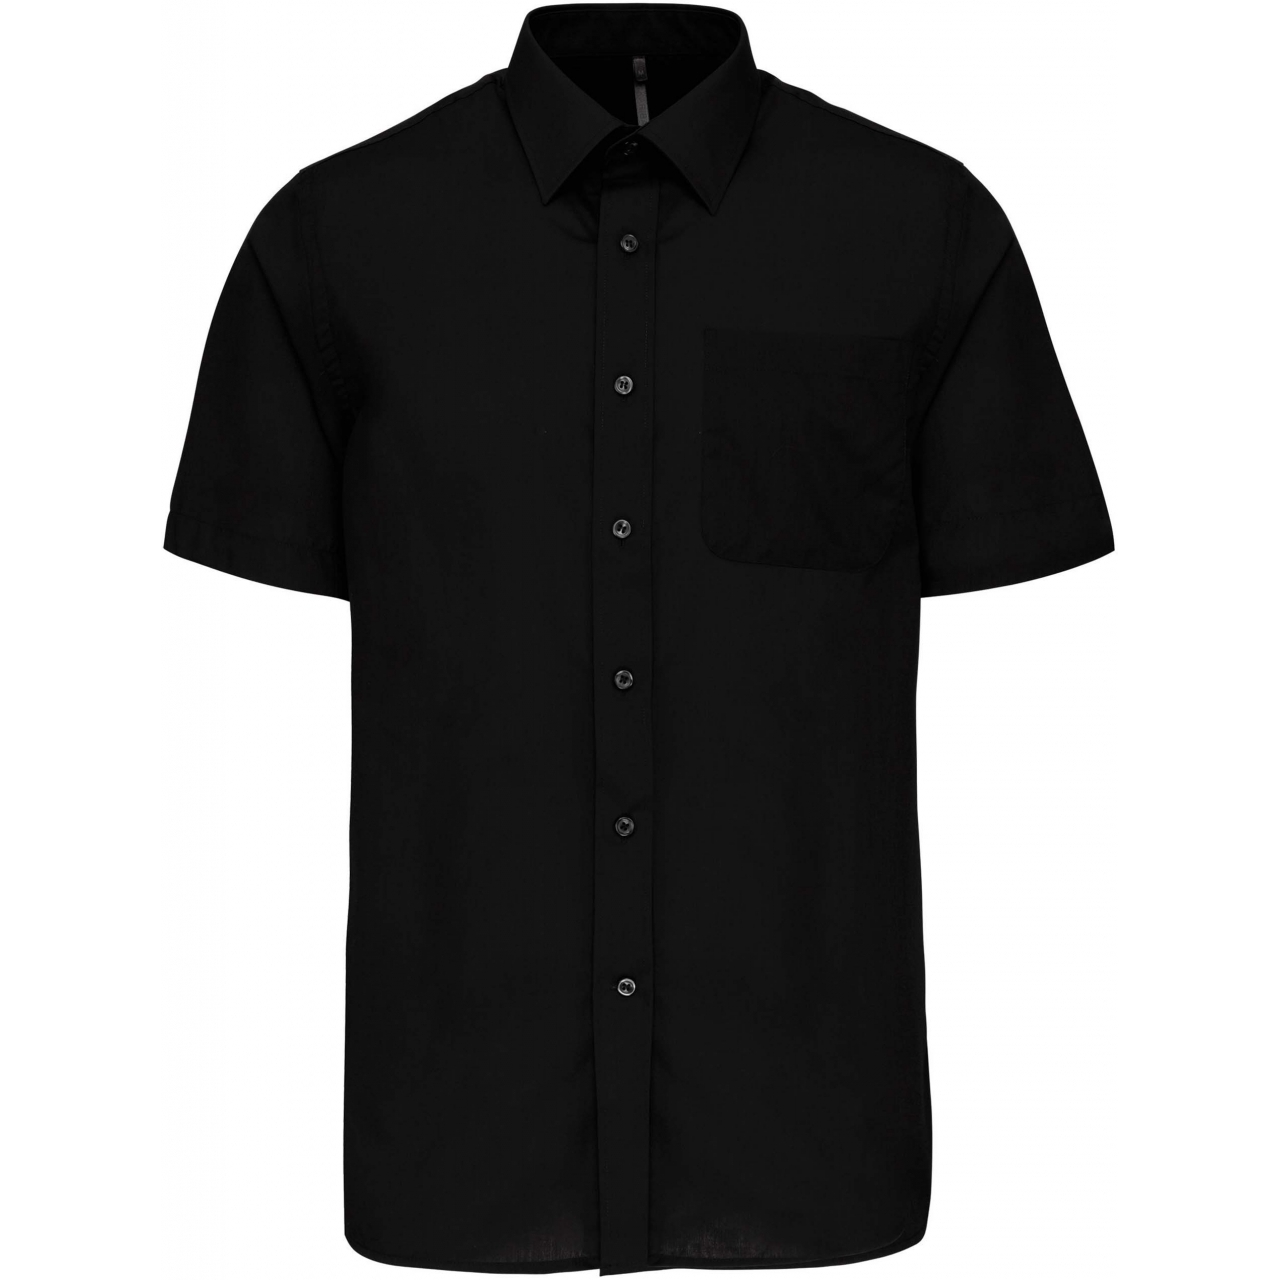 Pánská košile s krátkým rukávem Kariban ACE - černá, XXL